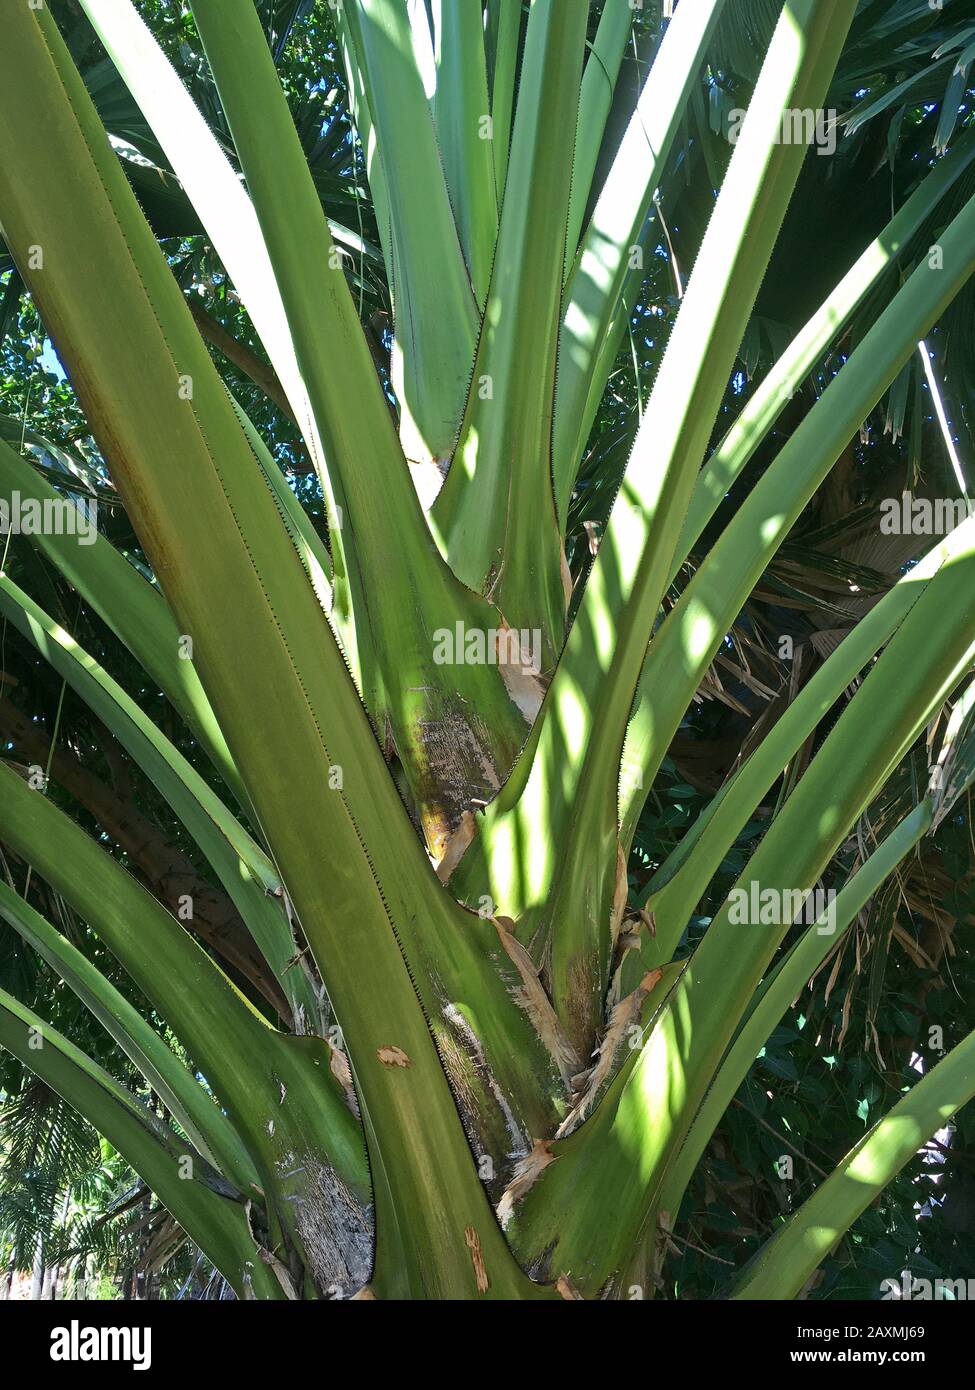 arenga pinnata palm tree or Sugar Palm close up Stock Photo